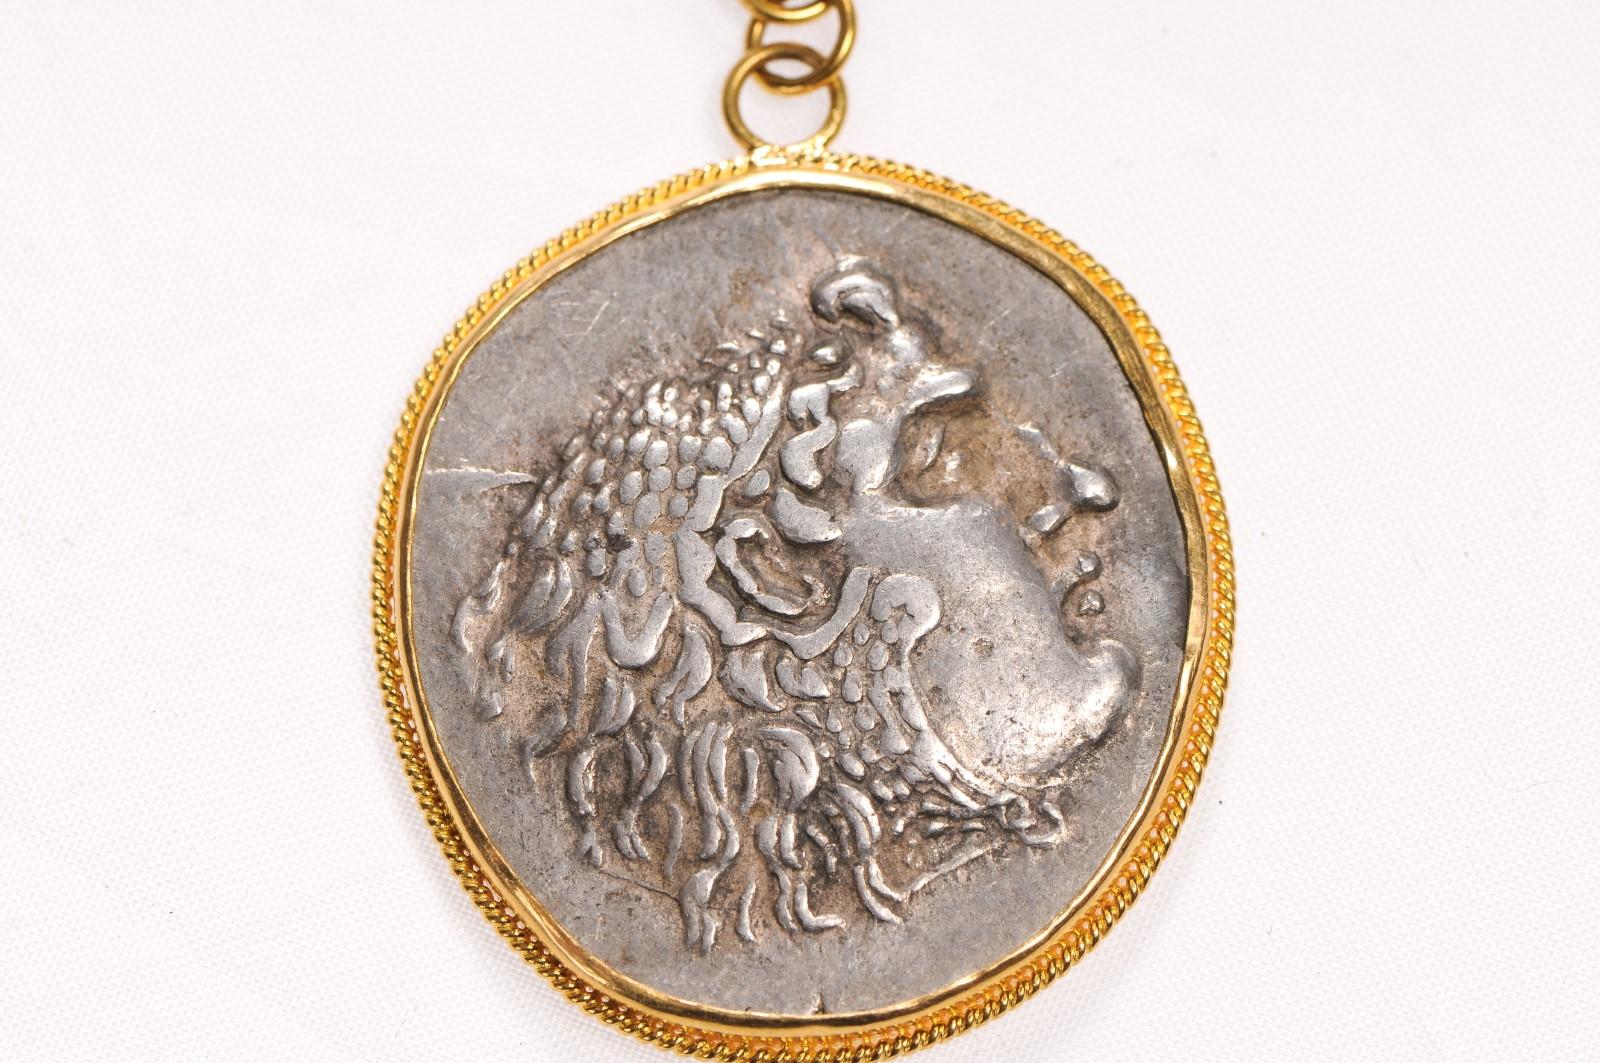 Eine authentische griechische (makedonische) Alexander der Große Tetradrachme Münze, 336 - 323 v. Chr., in einem 22k Gold Lünette und Kaution mit einem Smaragd Stein Akzent gesetzt. Die Vorderseite der Münze zeigt Herakles und Zeus, die Rückseite.